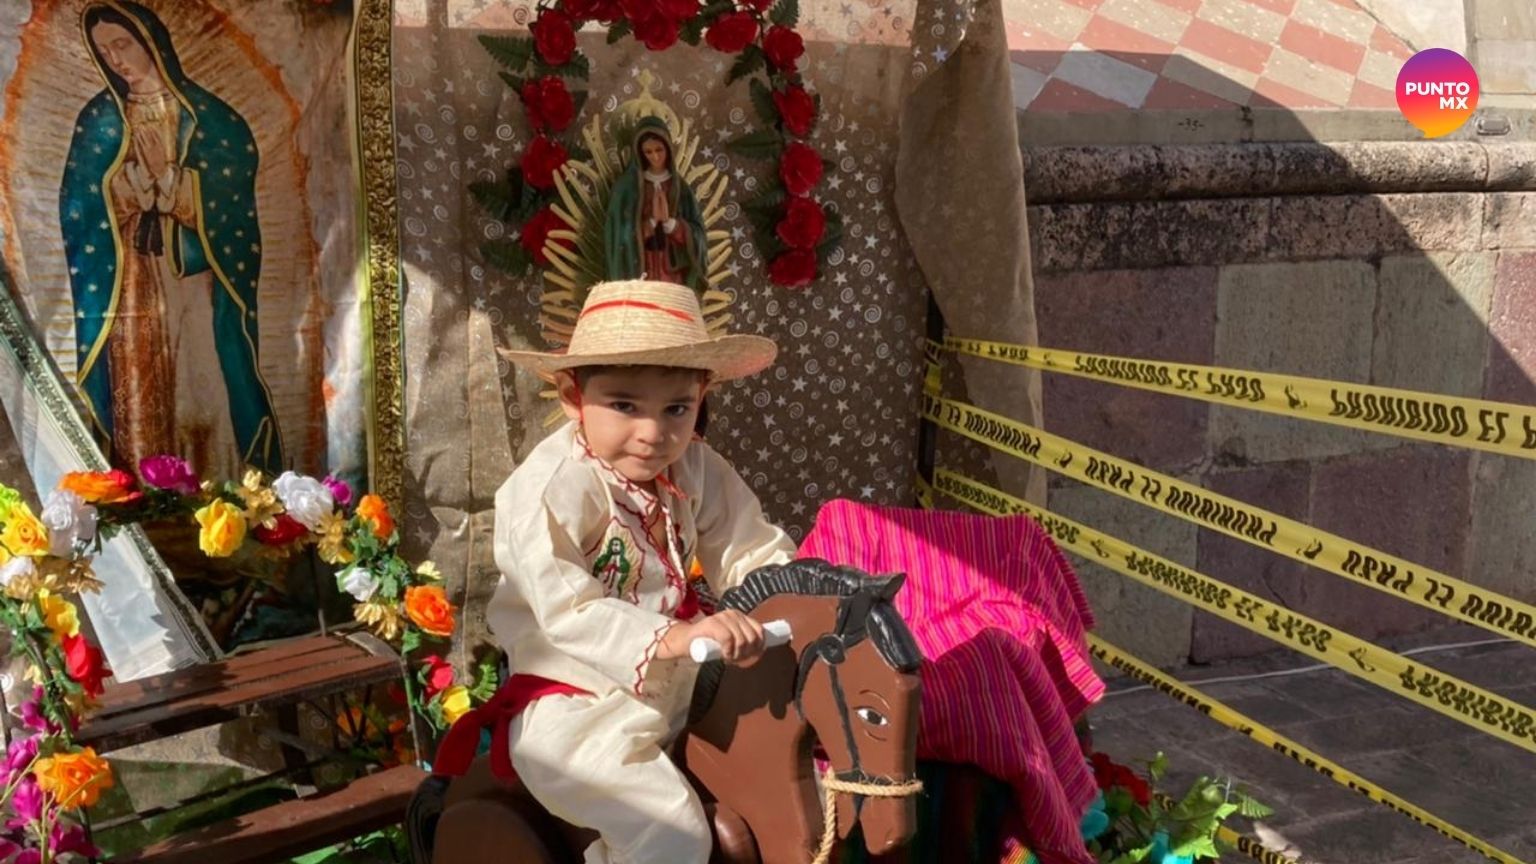 Vestidos de 'inditos' y 'morenitas' acuden a la Virgen de Guadalupe - Punto  MX